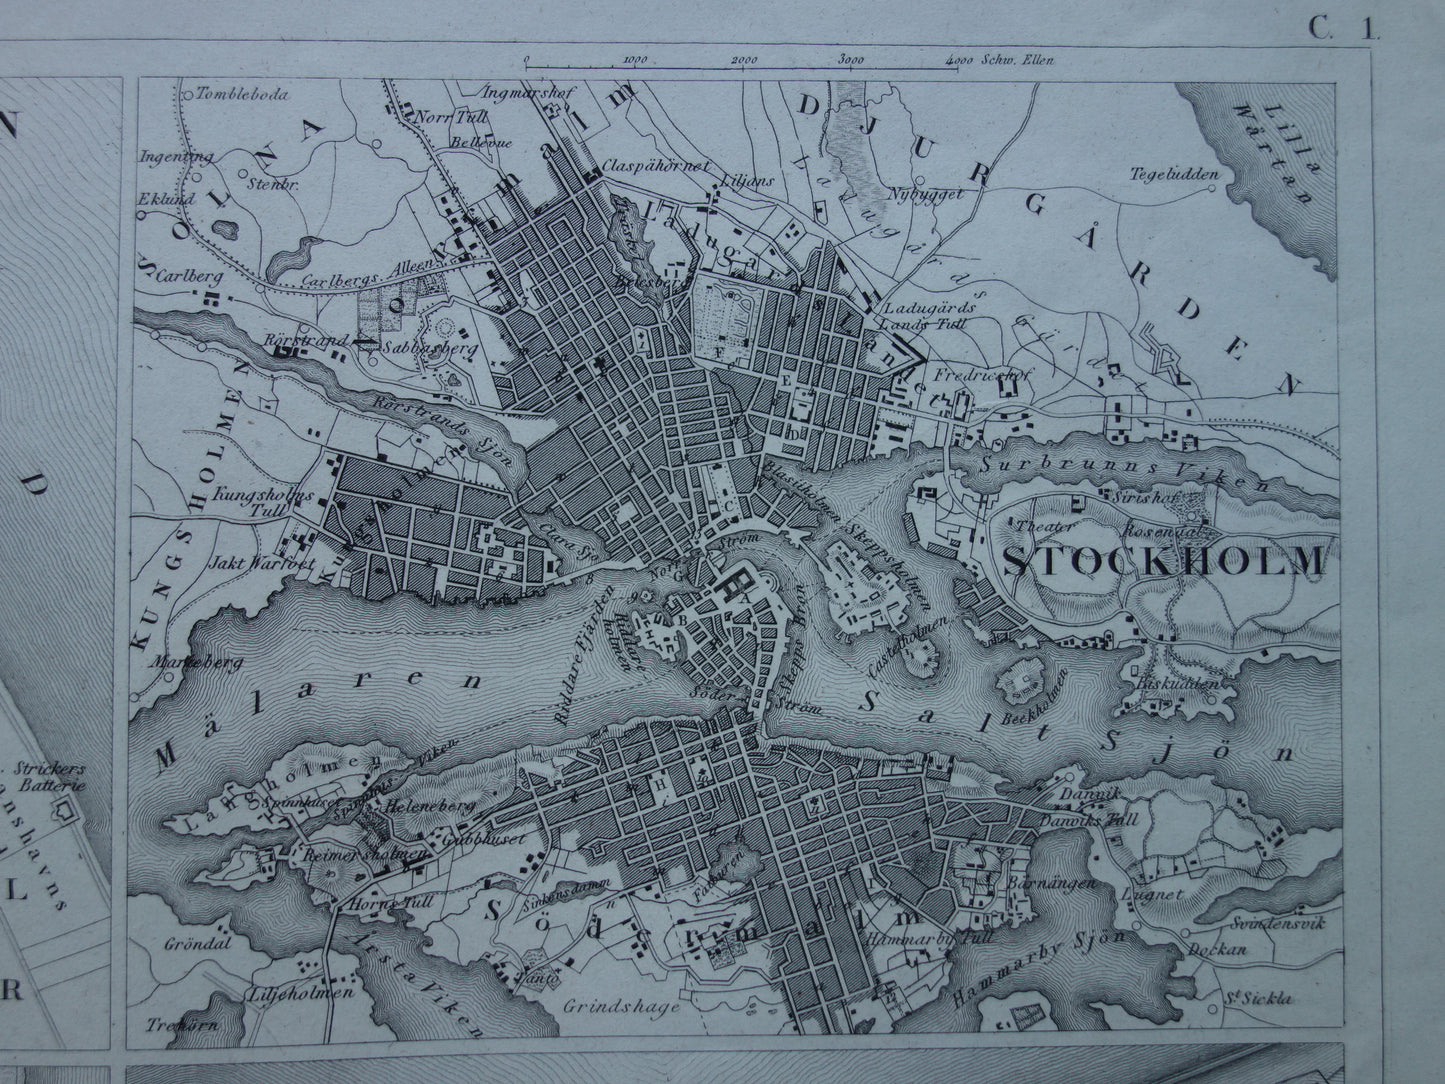 Amsterdam Antwerpen Stockholm Kopenhagen antieke plattegrond 170+ jaar oude kaart met plattegronden van Europese steden uit 1849 - originele vintage historische kaarten